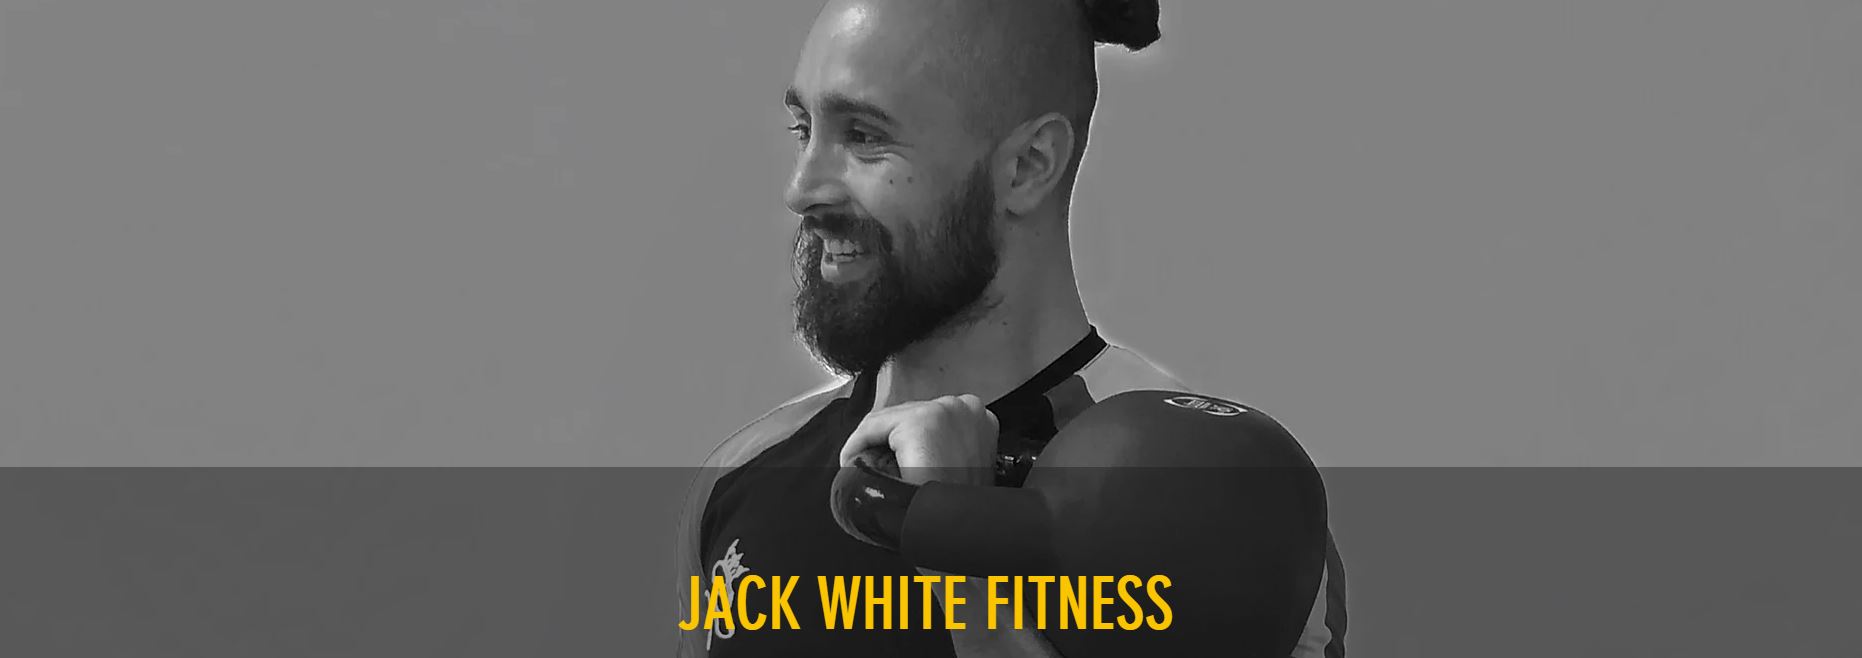 jack white fitness